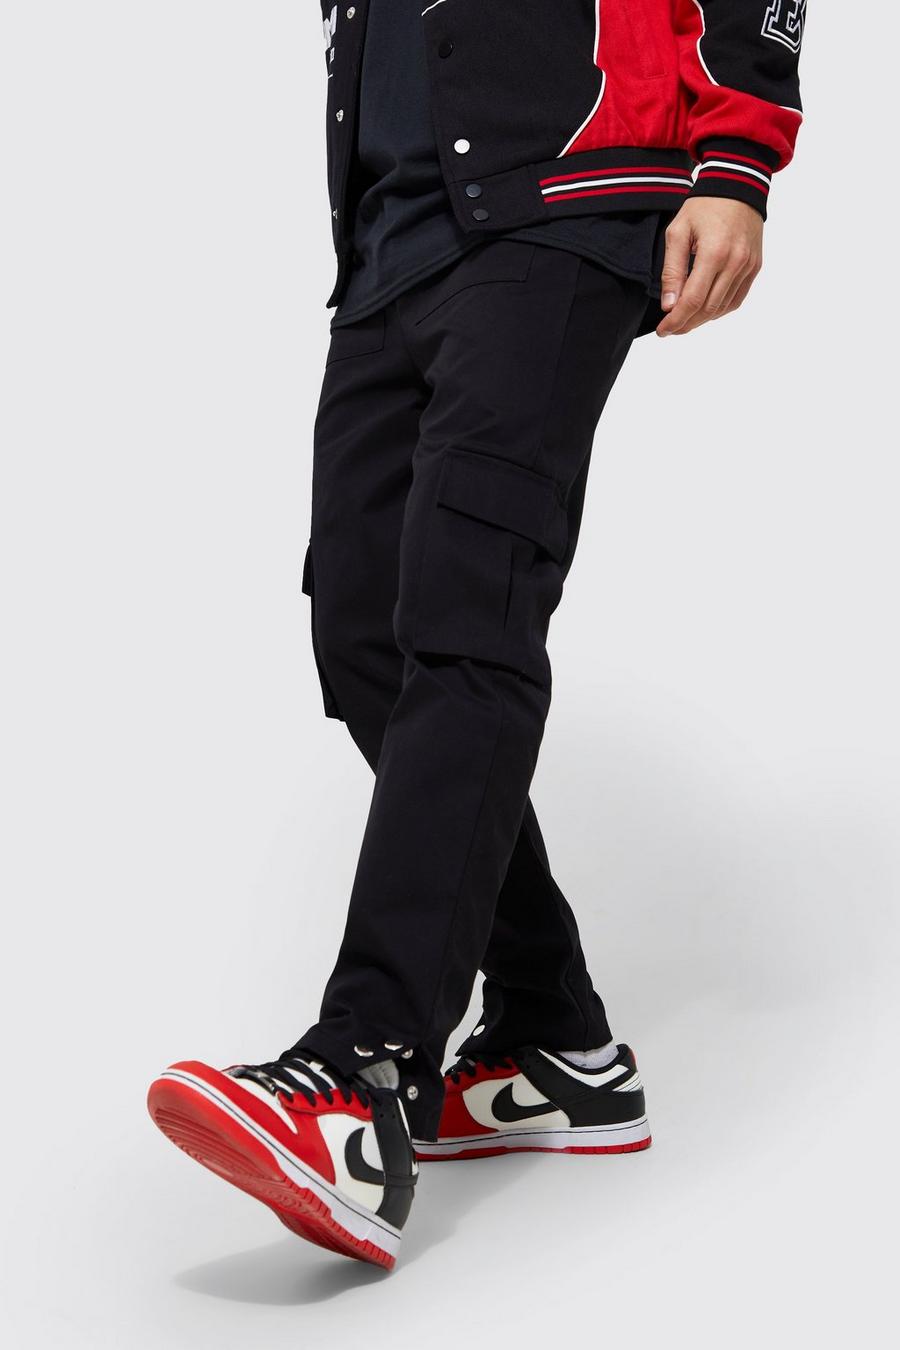 Pantalón ajustado con botones de presión y multibolsillos cargo, Black nero